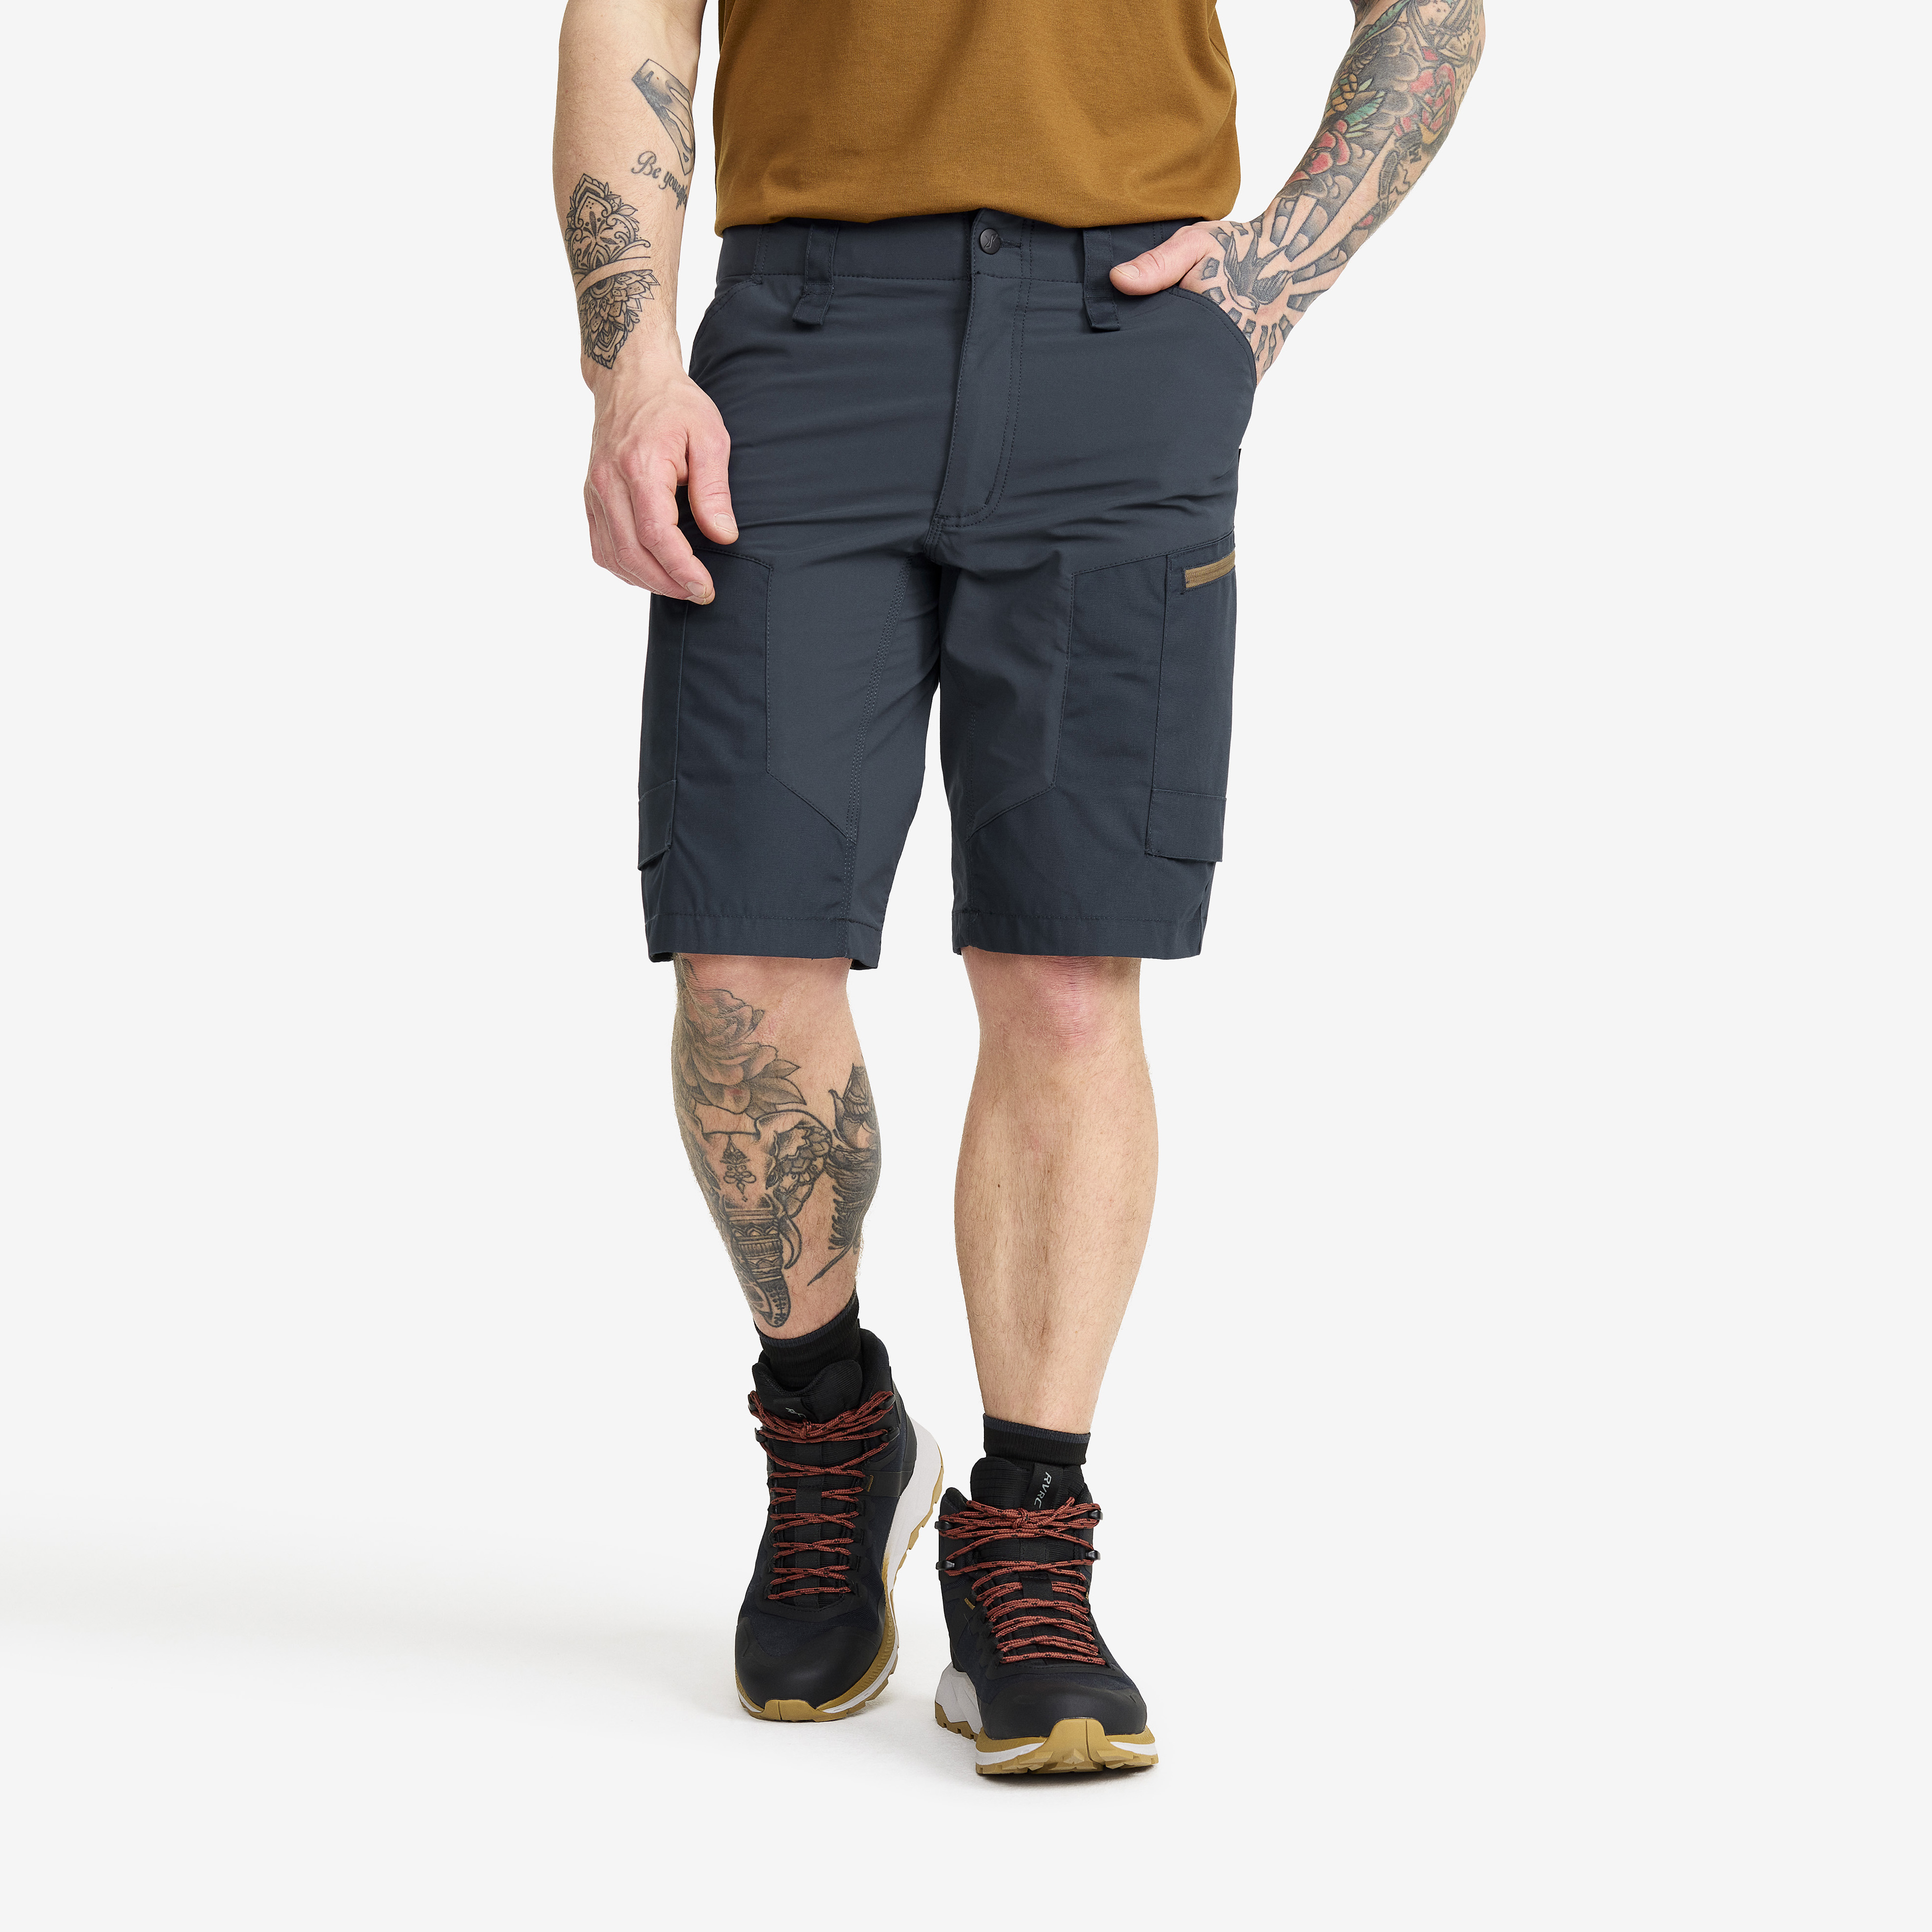 RVRC GP Shorts – Herr – Blueberry Storlek:S – Byxor > Shorts